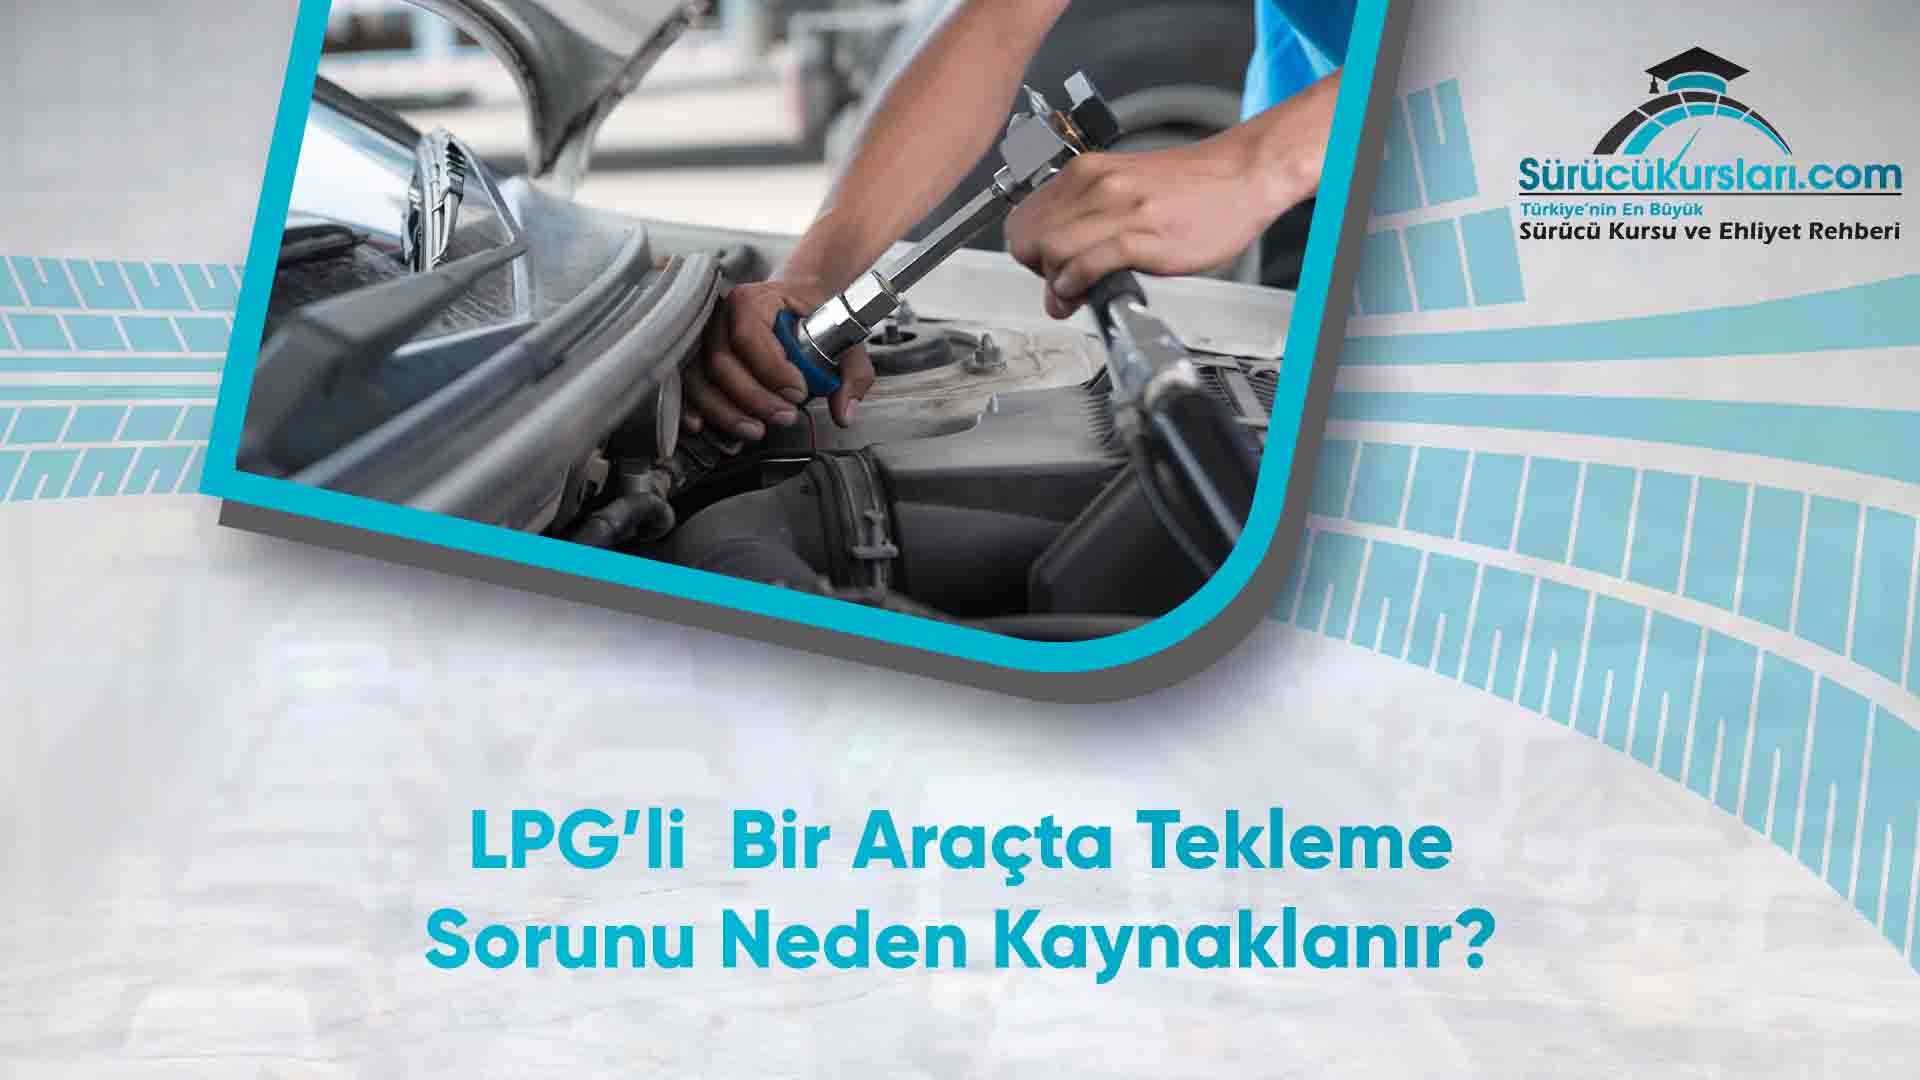 LPG’li  Bir Araçta Tekleme Sorunu Neden Kaynaklanır